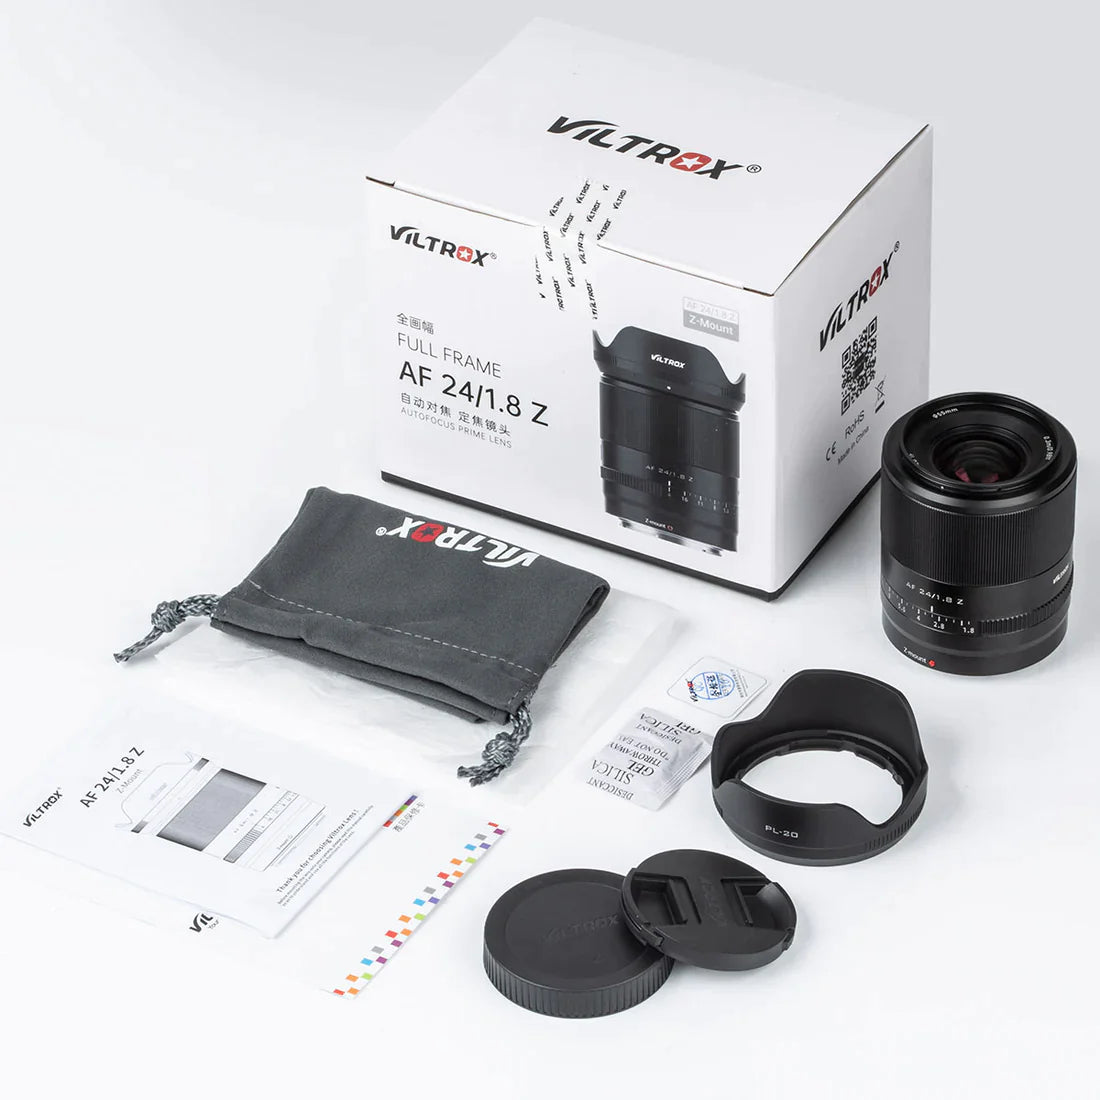 Viltrox AF 24mm F1.8 Full frame Lens for Nikon Z Mirrorless Camera - Vitopal